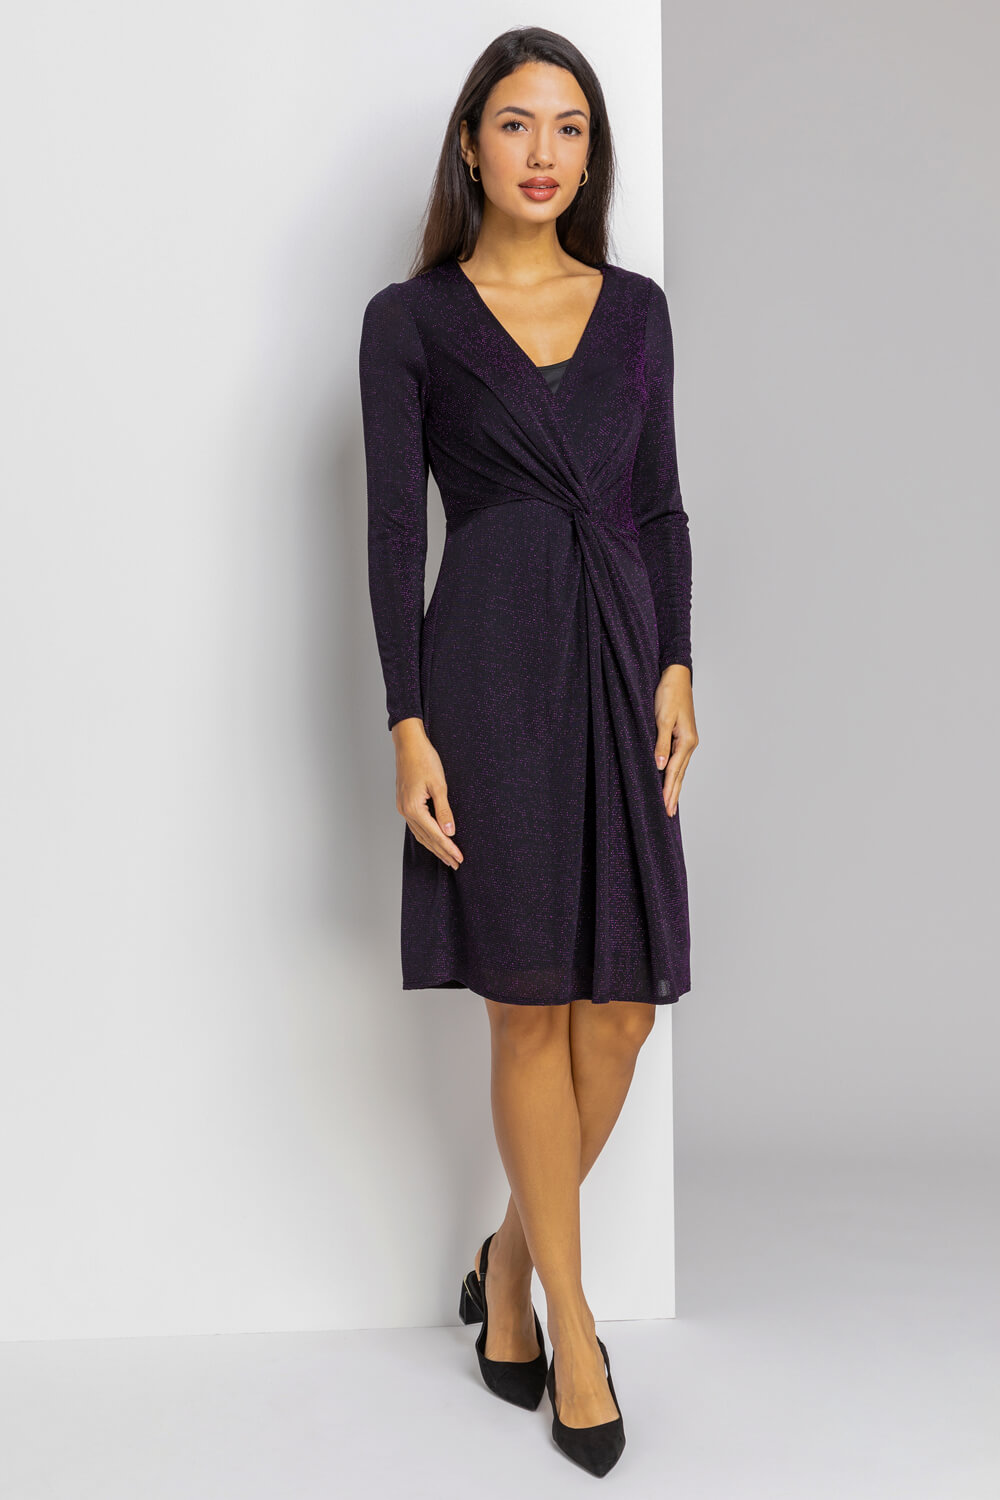 Purple Twist Front Sparkle Embellished Dress, Image 3 of 5